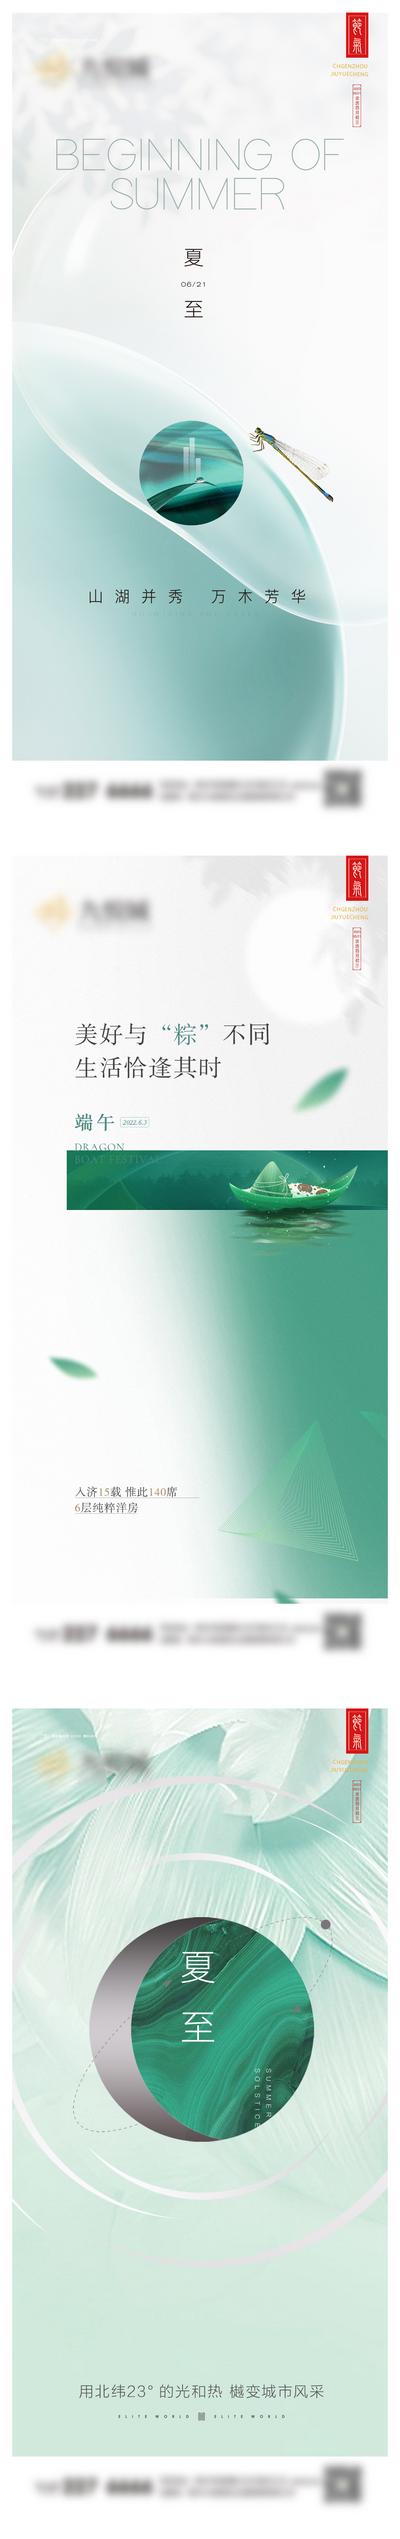 南门网 海报 地产 二十四节气 夏至 中国传统节日 端午节 简约